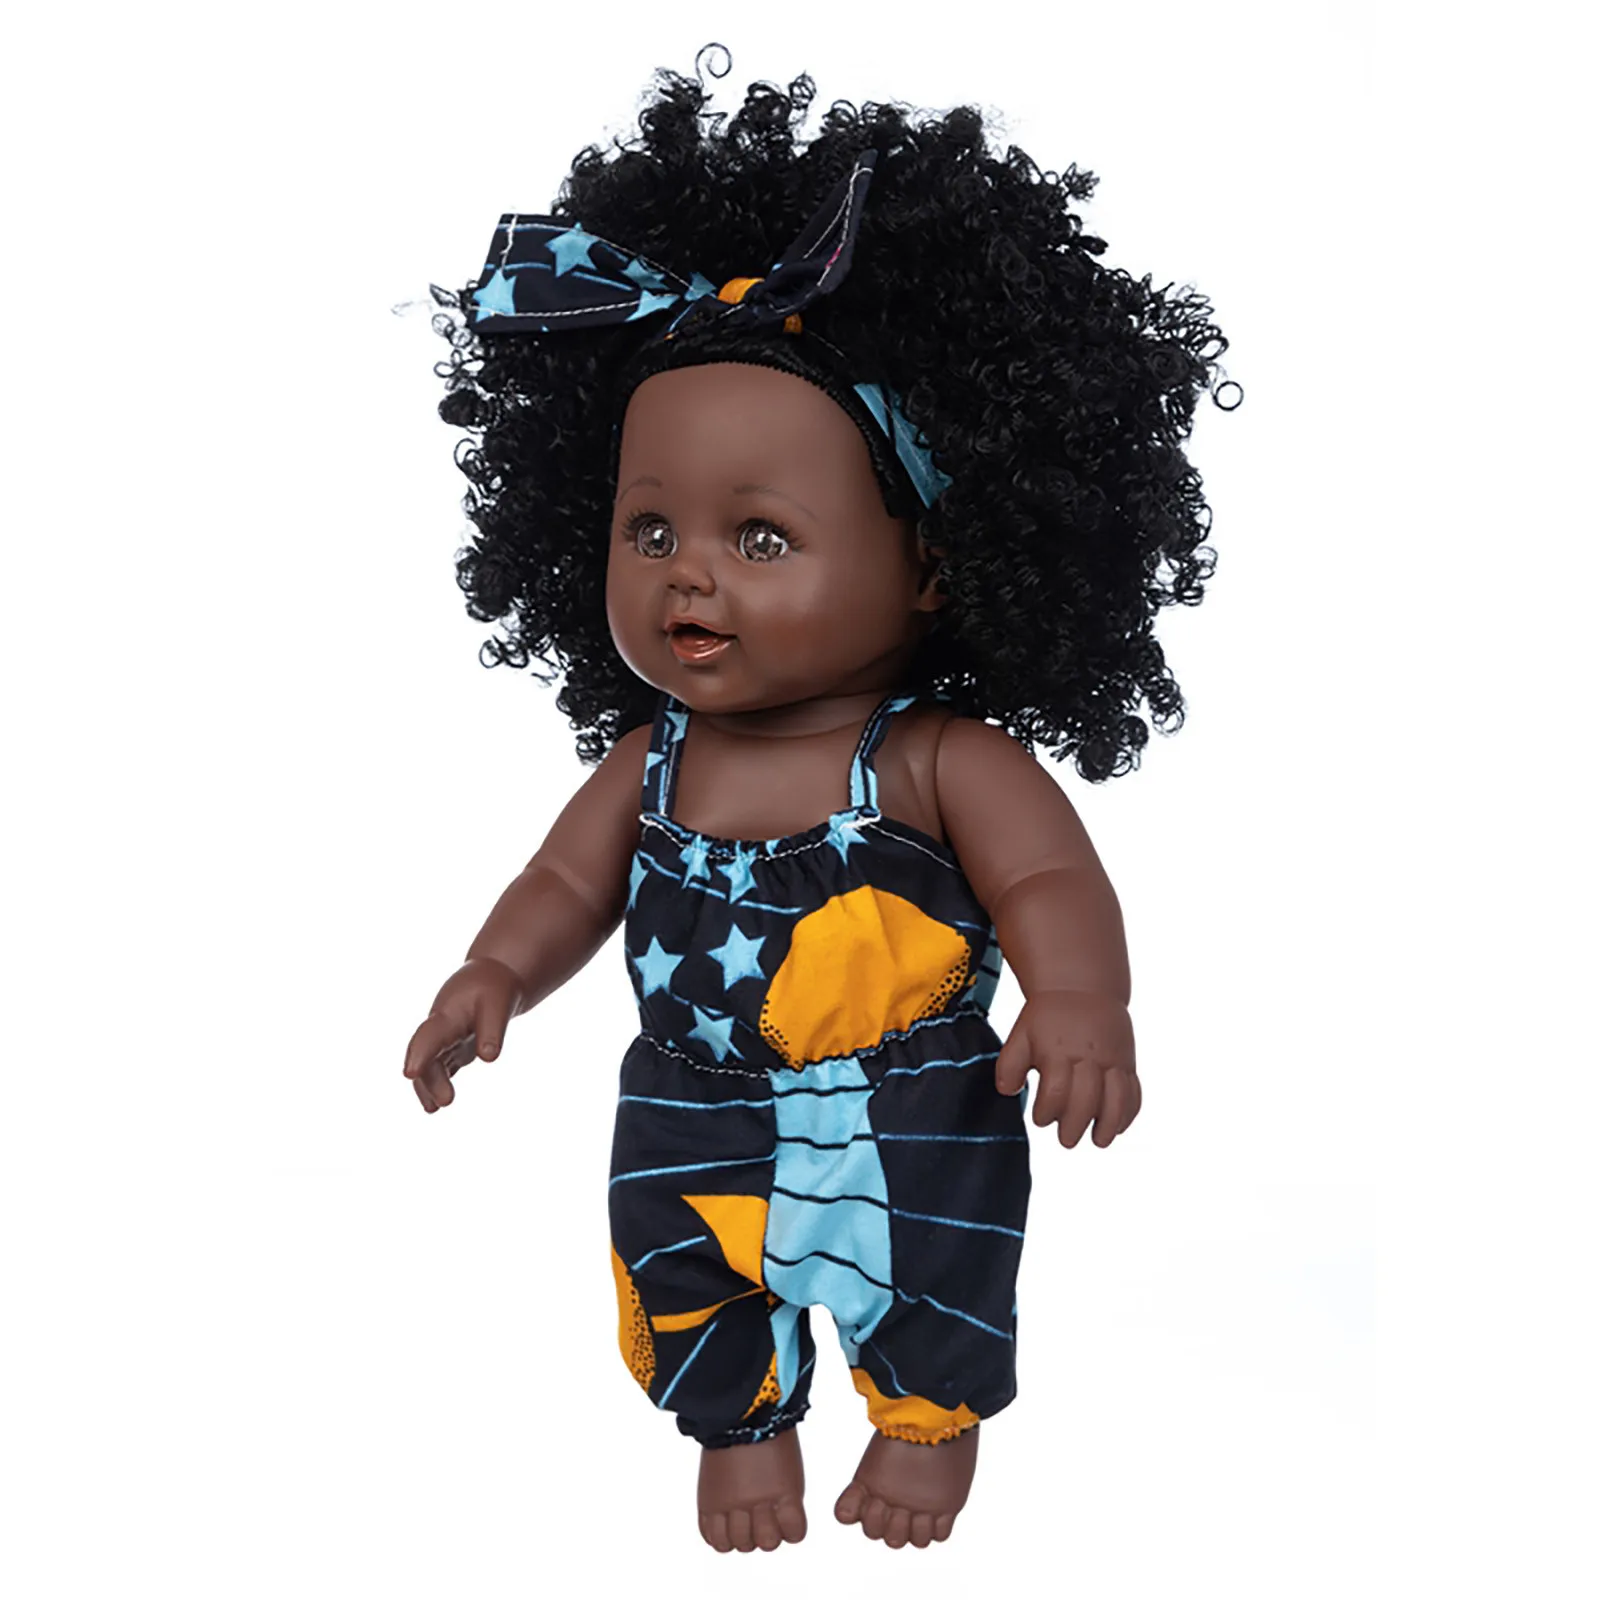 

Black African Black Baby Cute Curly Black 35CM Vinyl Baby Toy Simulation doll toy Silicone black doll zabawki dla dzieci